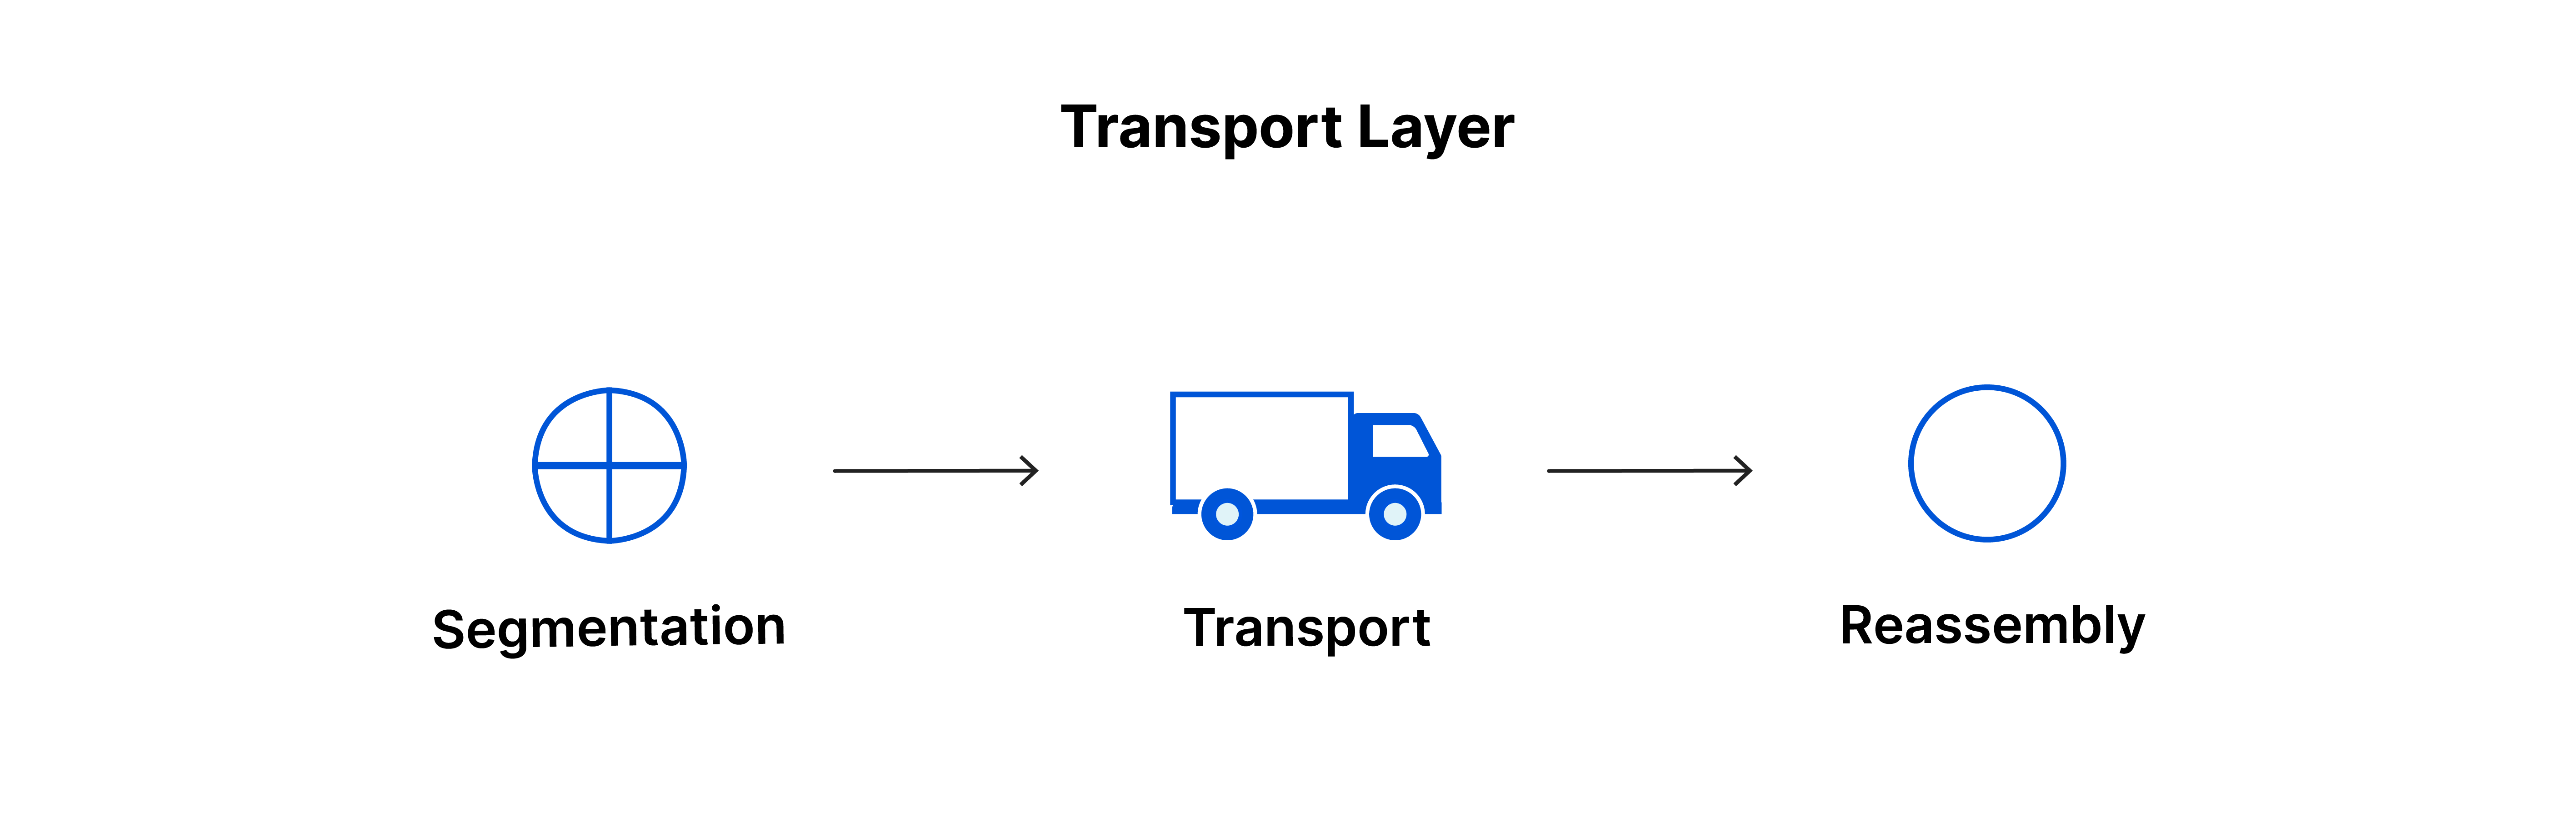 La couche de transport : segment, transport, réassemblage